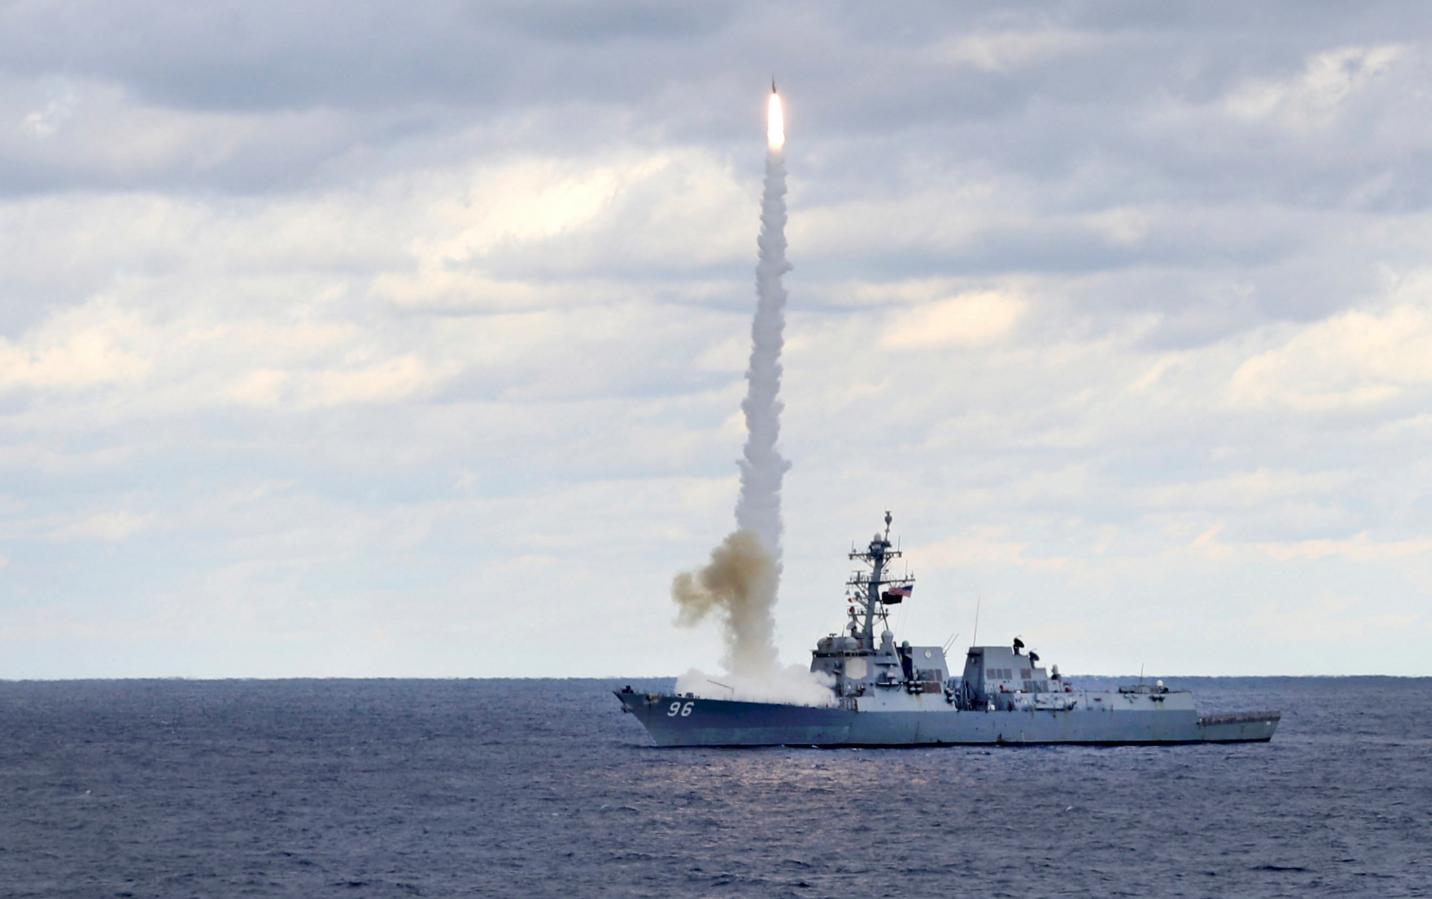 Пуск ракеты Standard Missile (SM) 2 Block IIIA с борта эсминца типа  Arleigh Burke   USS Bainbridge (DDG 96), фото сделано 18 ноября 2018 года в Атлантическом океане